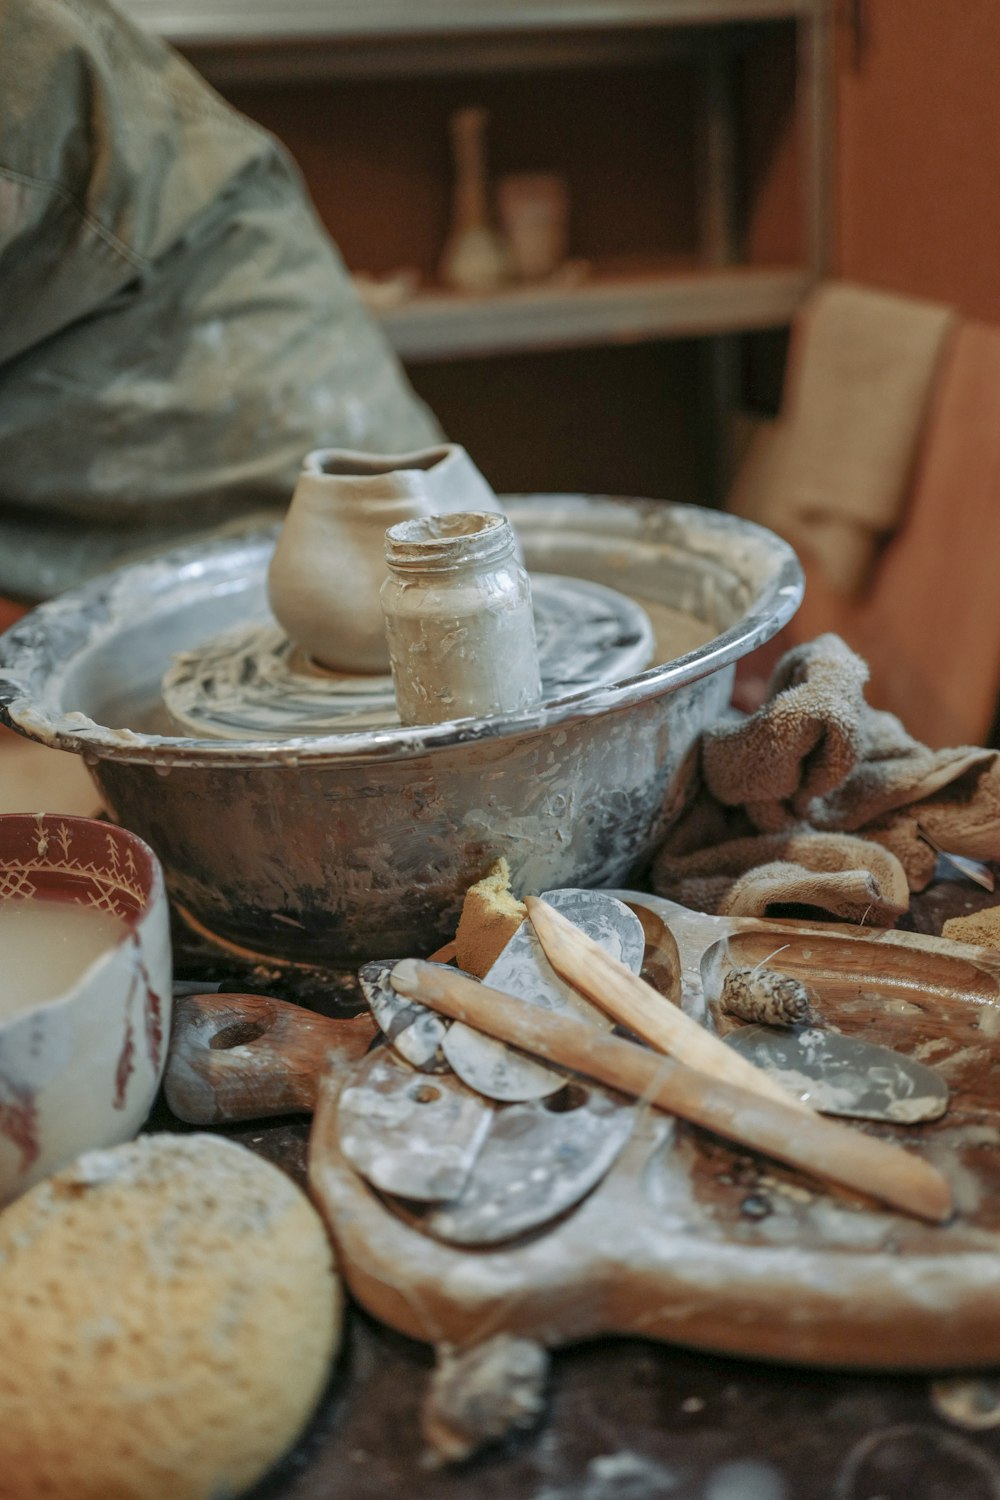 Un torno de alfarero rodeado de cerámica y otros artículos